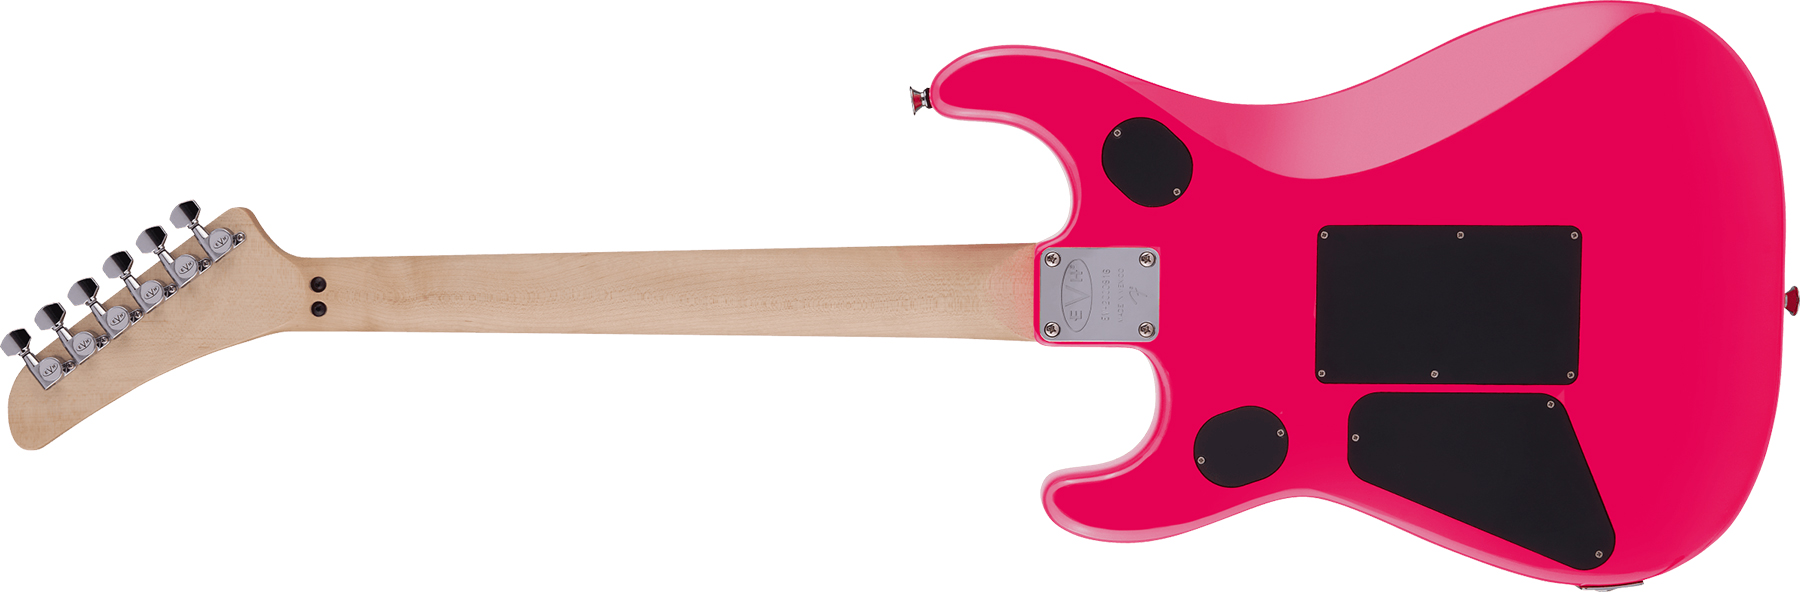 Evh 5150 Standard Mex 2h Fr Mn - Neon Pink - Guitarra eléctrica con forma de str. - Variation 1